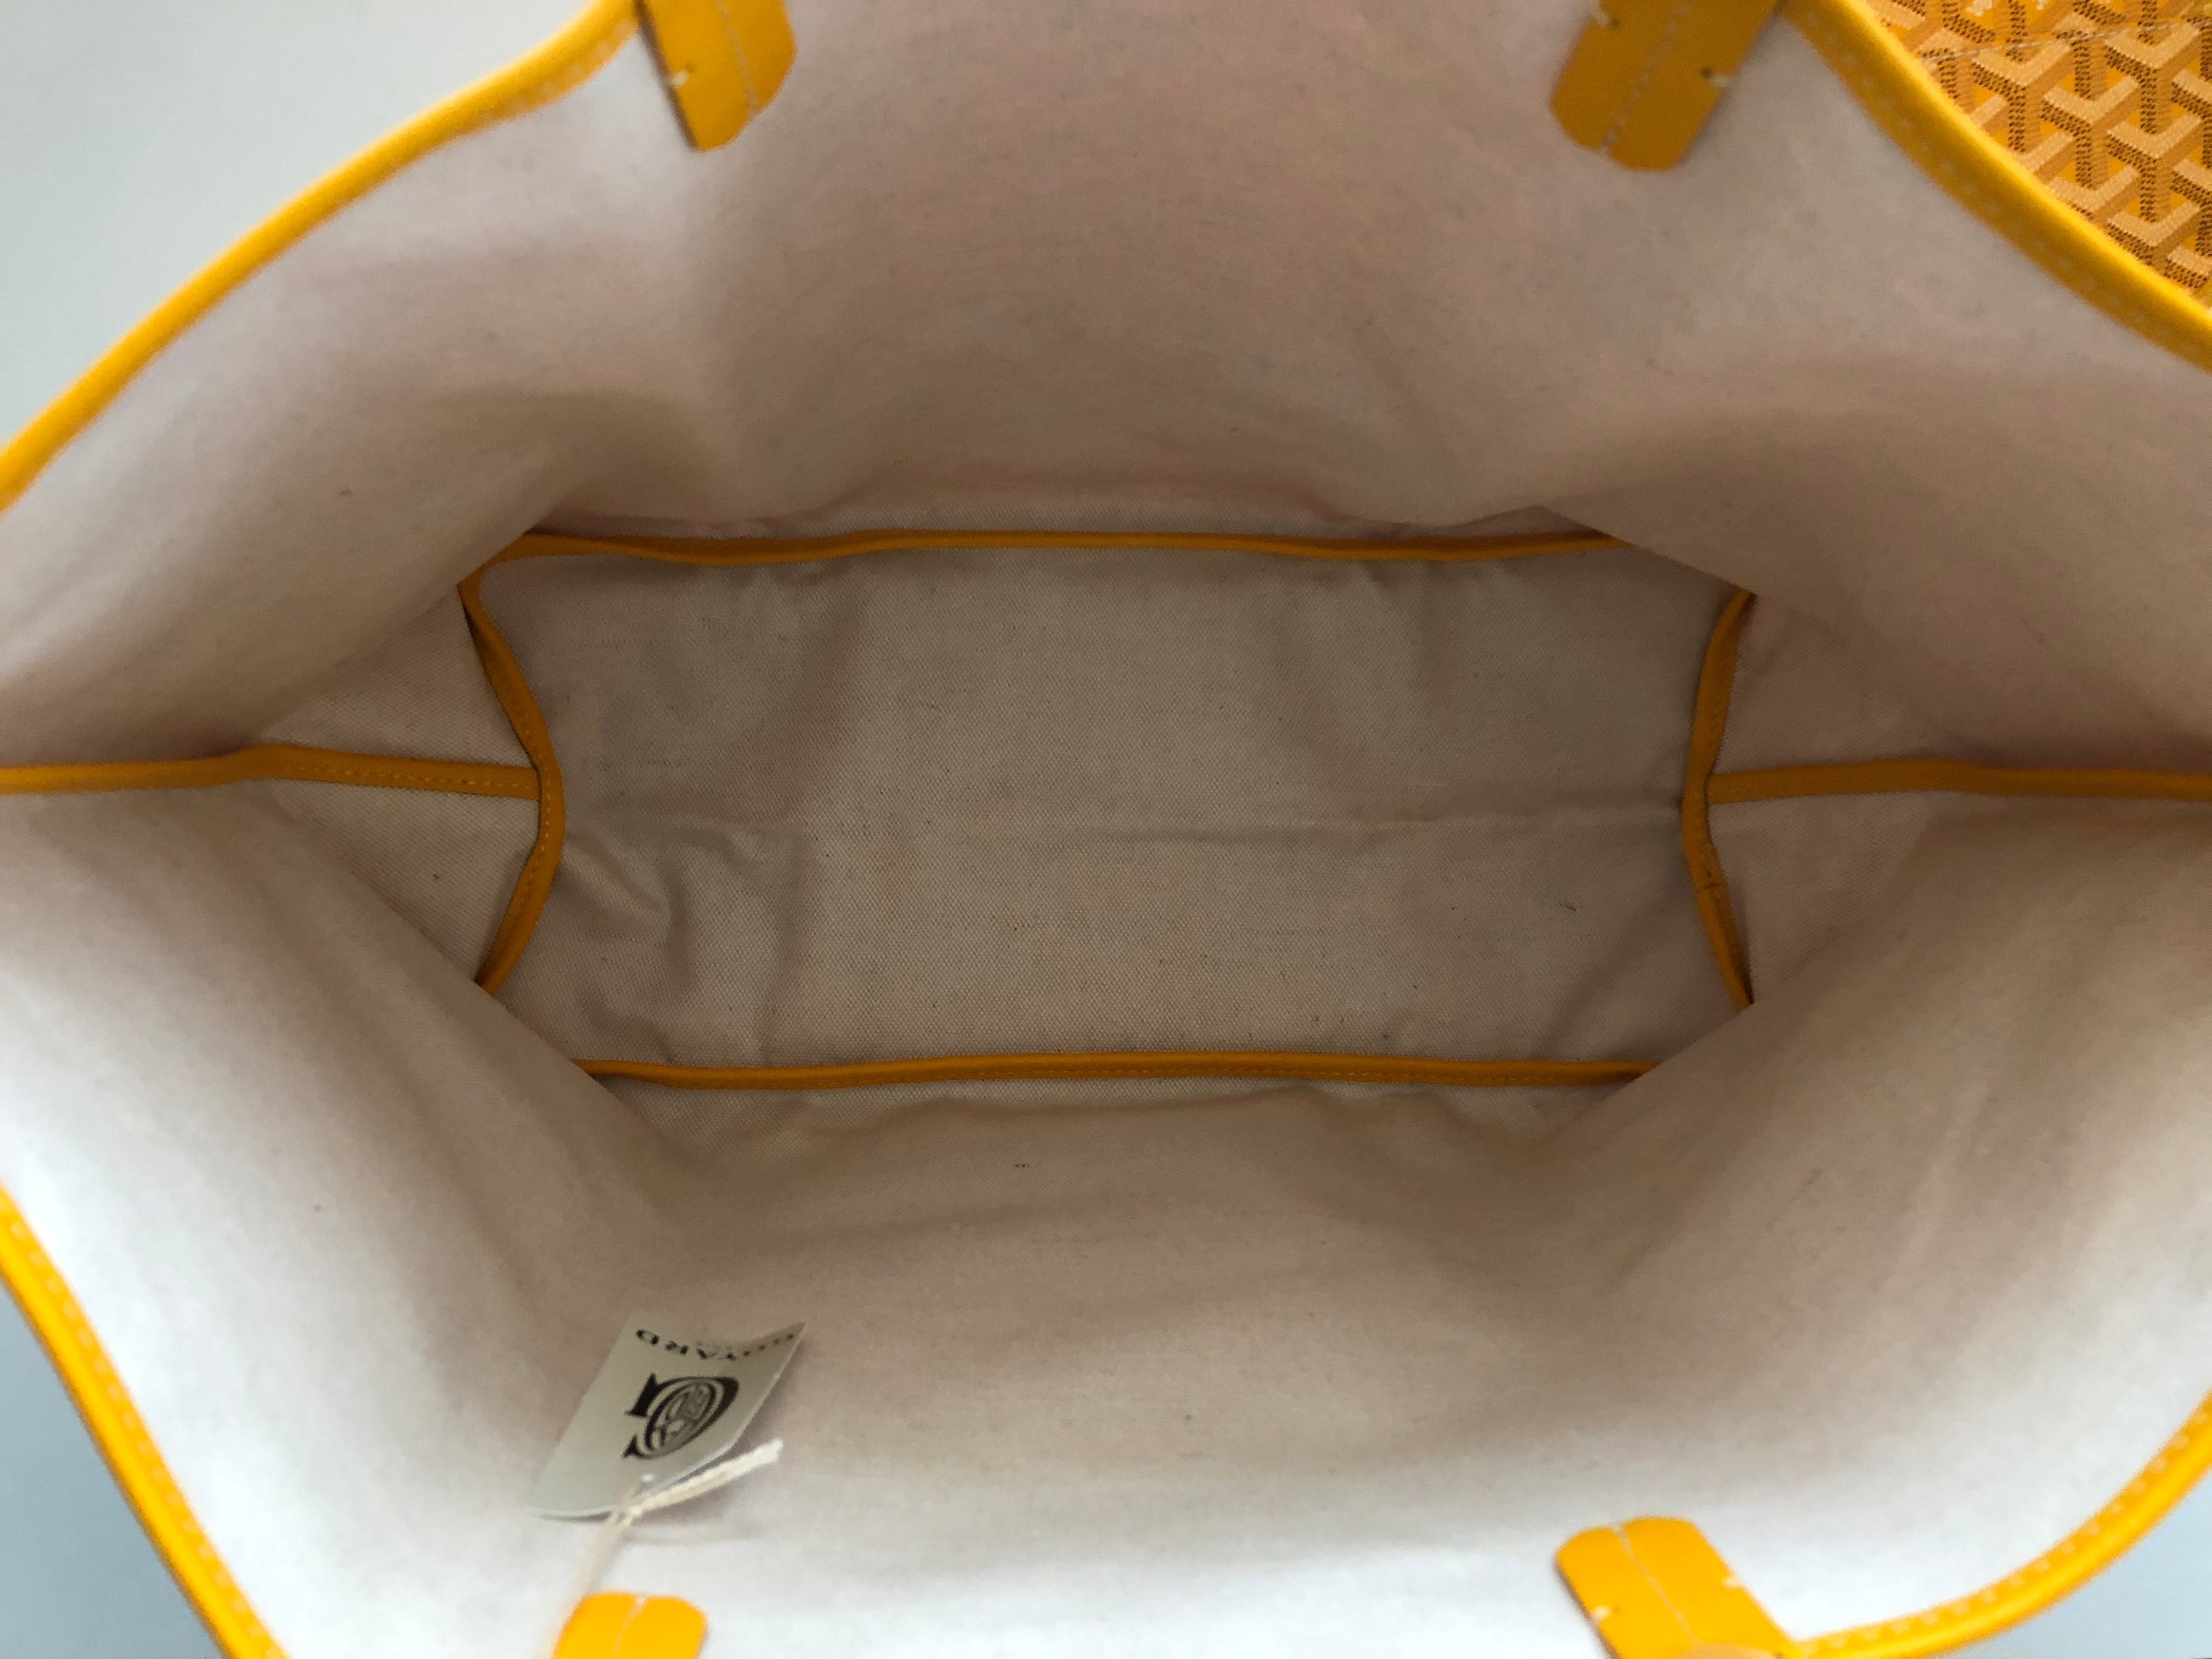 Goyard Yellow Chevron Saint Louis PM Tote Bag with Pouch 929gy99